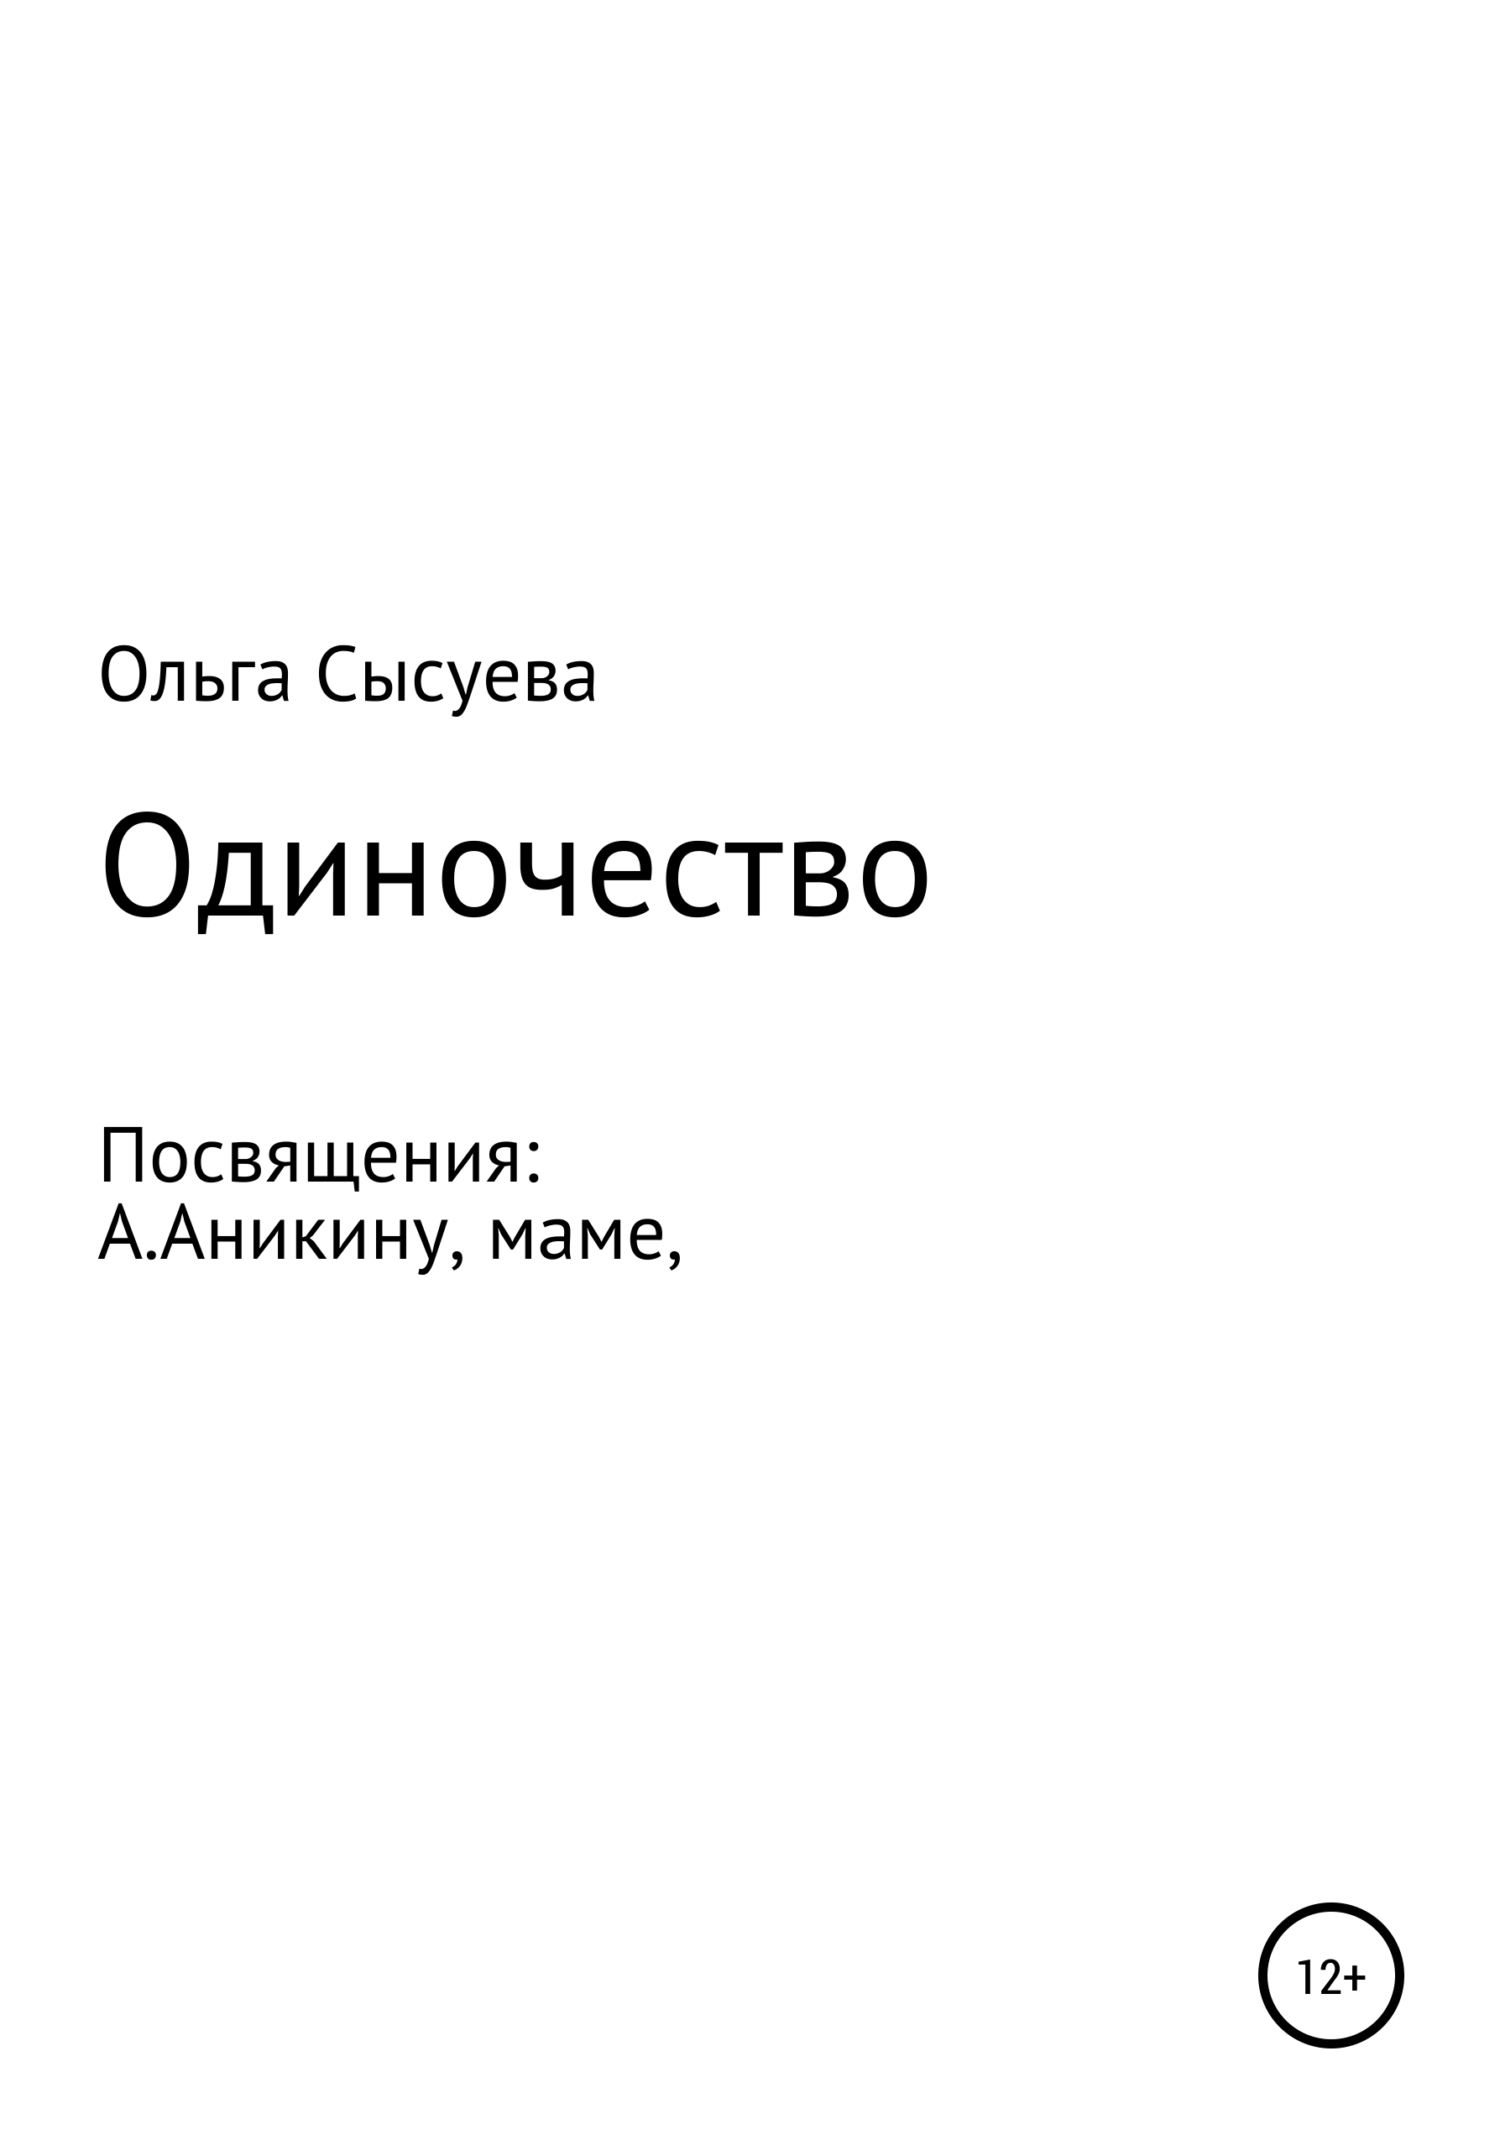 Одиночество - Ольга Сергеевна Сысуева